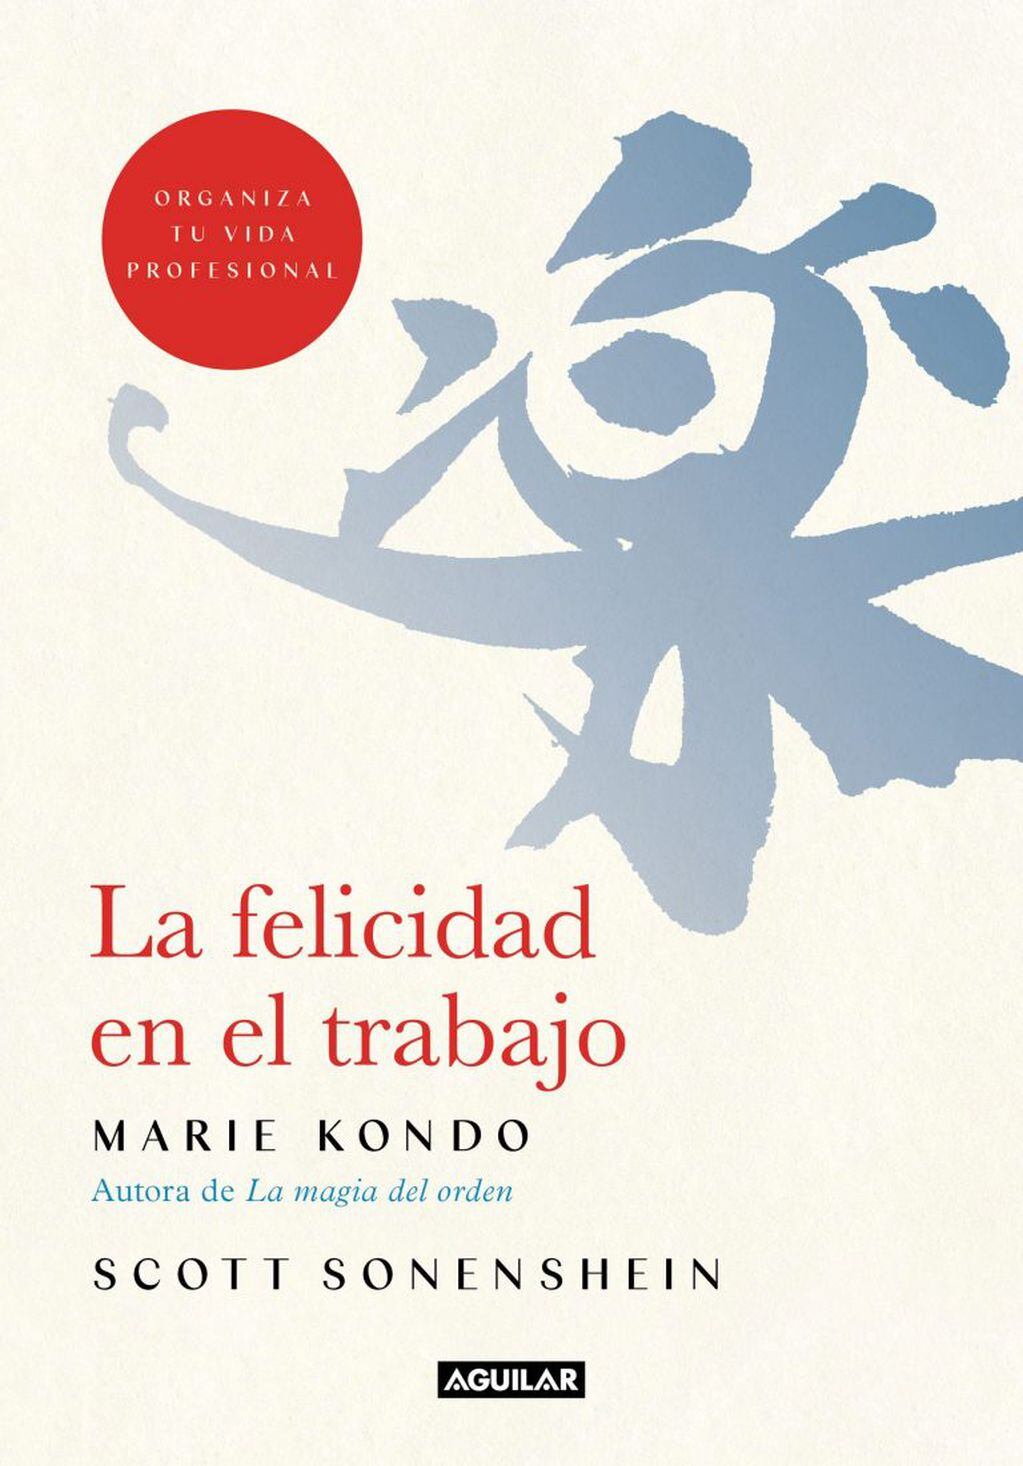 Marie Kondo (Archivo)